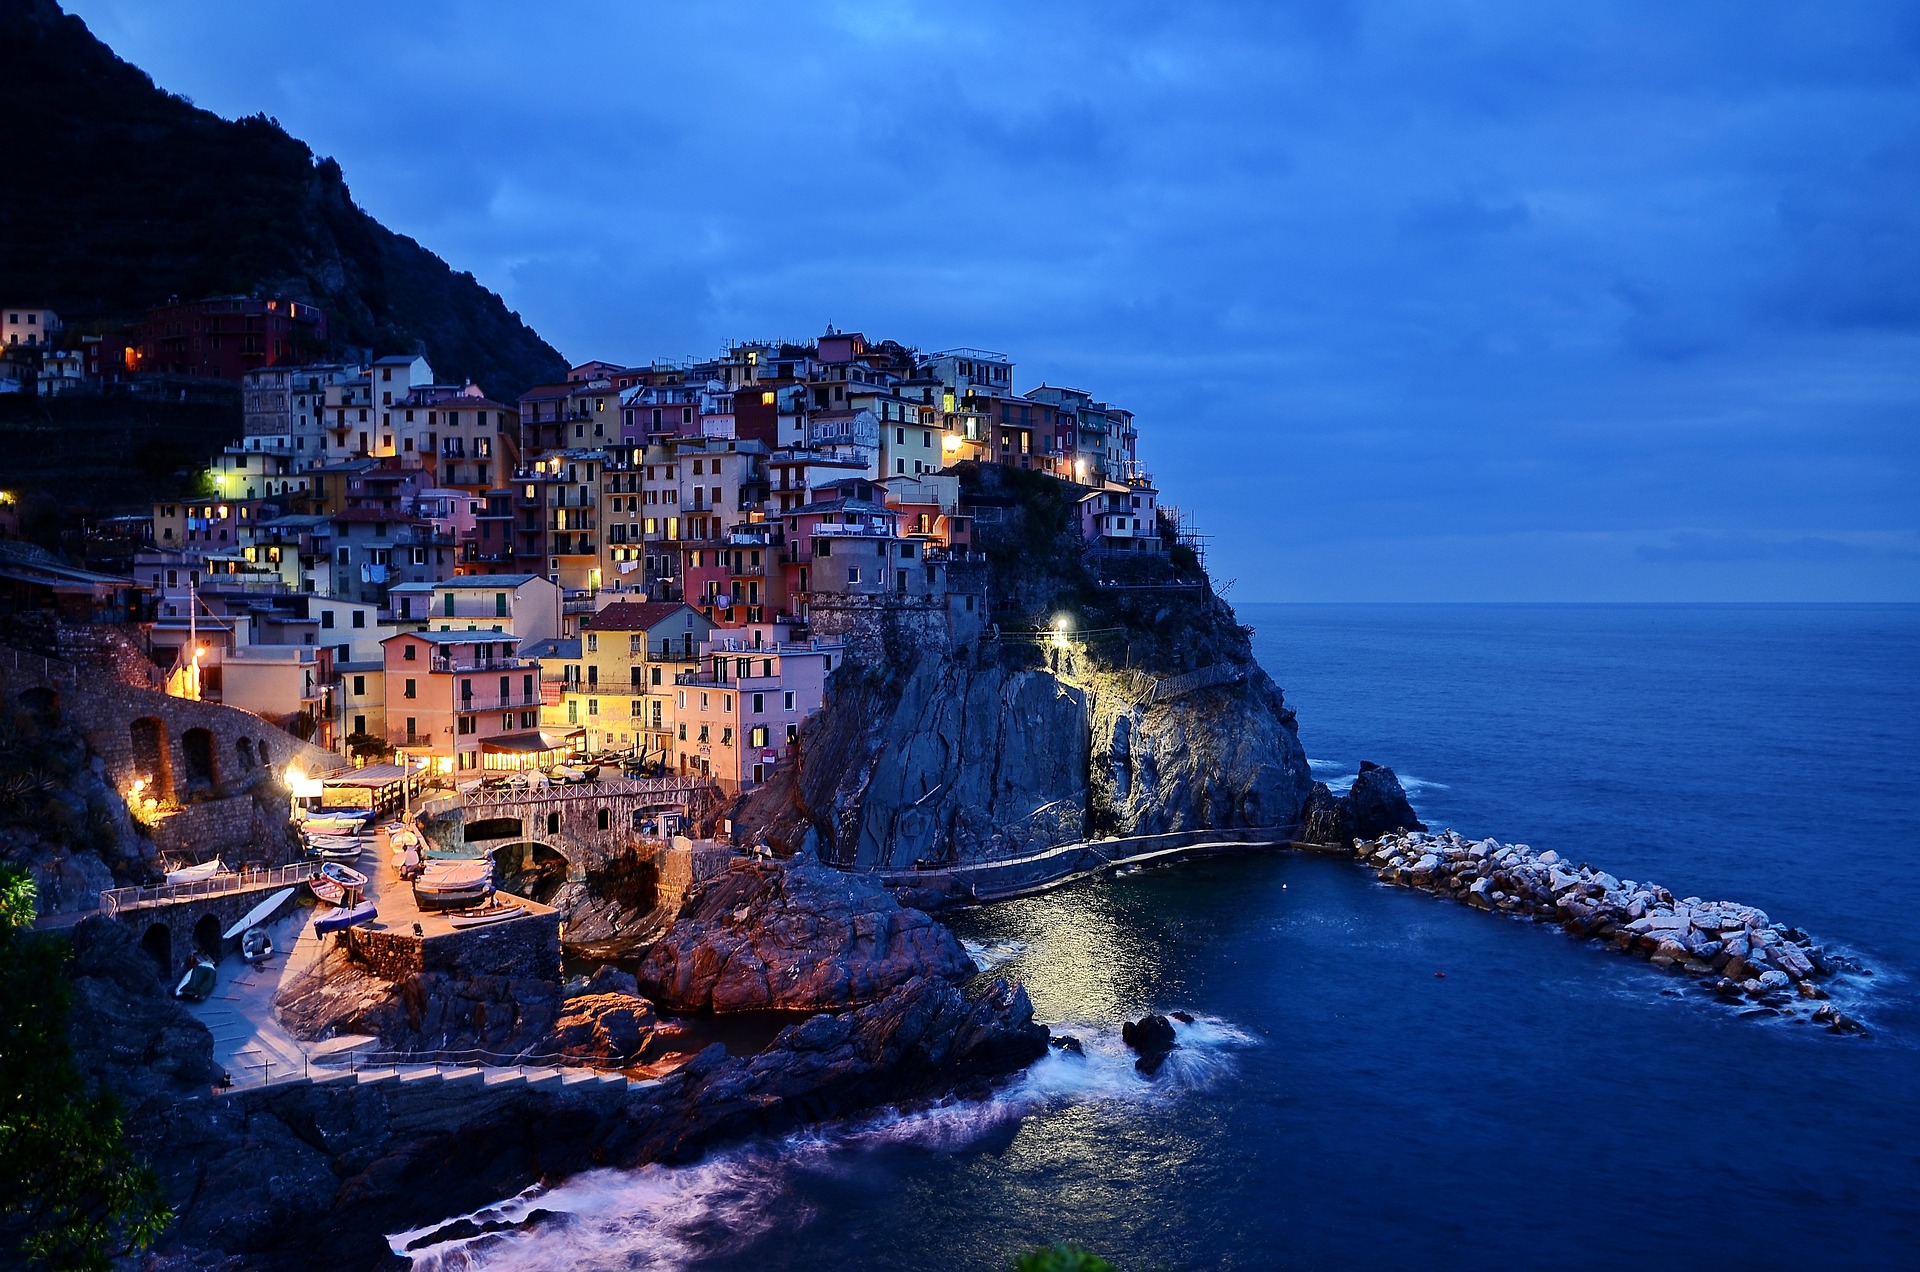 Lavoro, in Liguria impennata degli occupati: commercio, ristorazione e turismo i settori trainanti